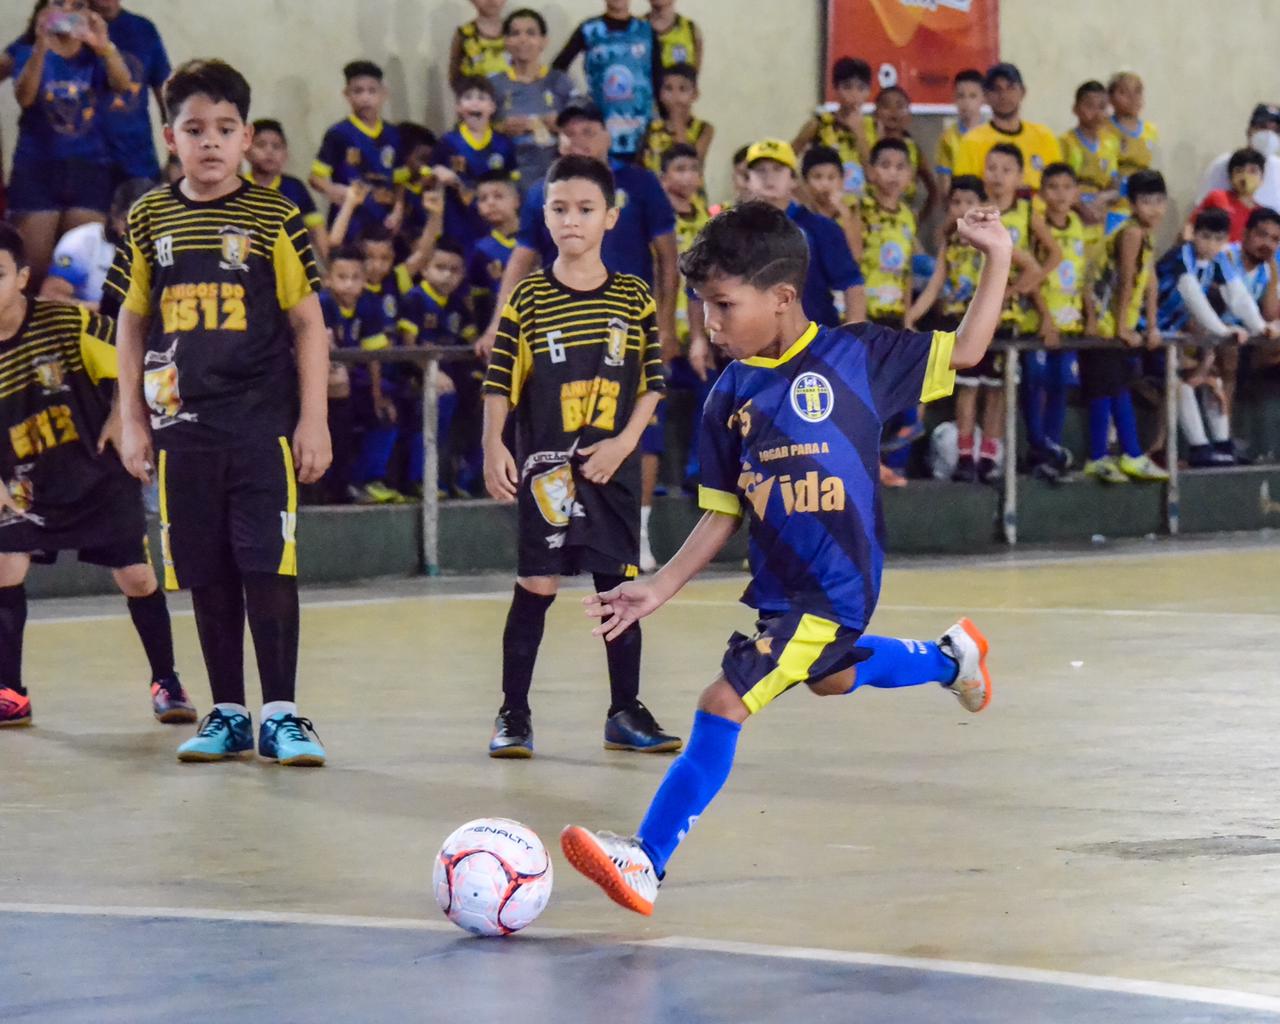 Torneio de futsal Explosão Kids Sub-10 reúne 120 crianças no Santa Luzia